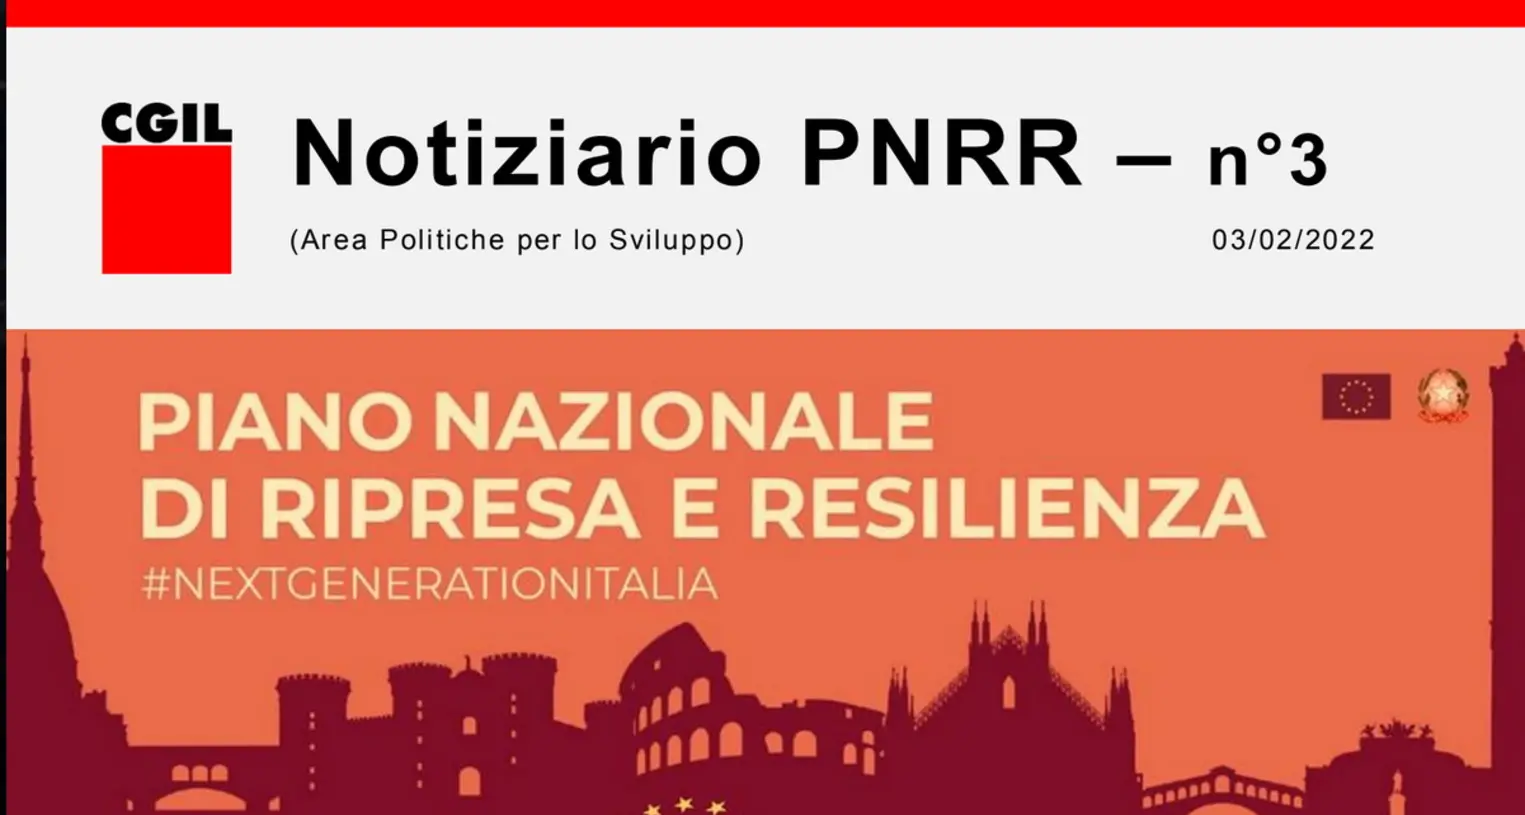 Newsletter 'Notiziario PNRR' - Numero 3